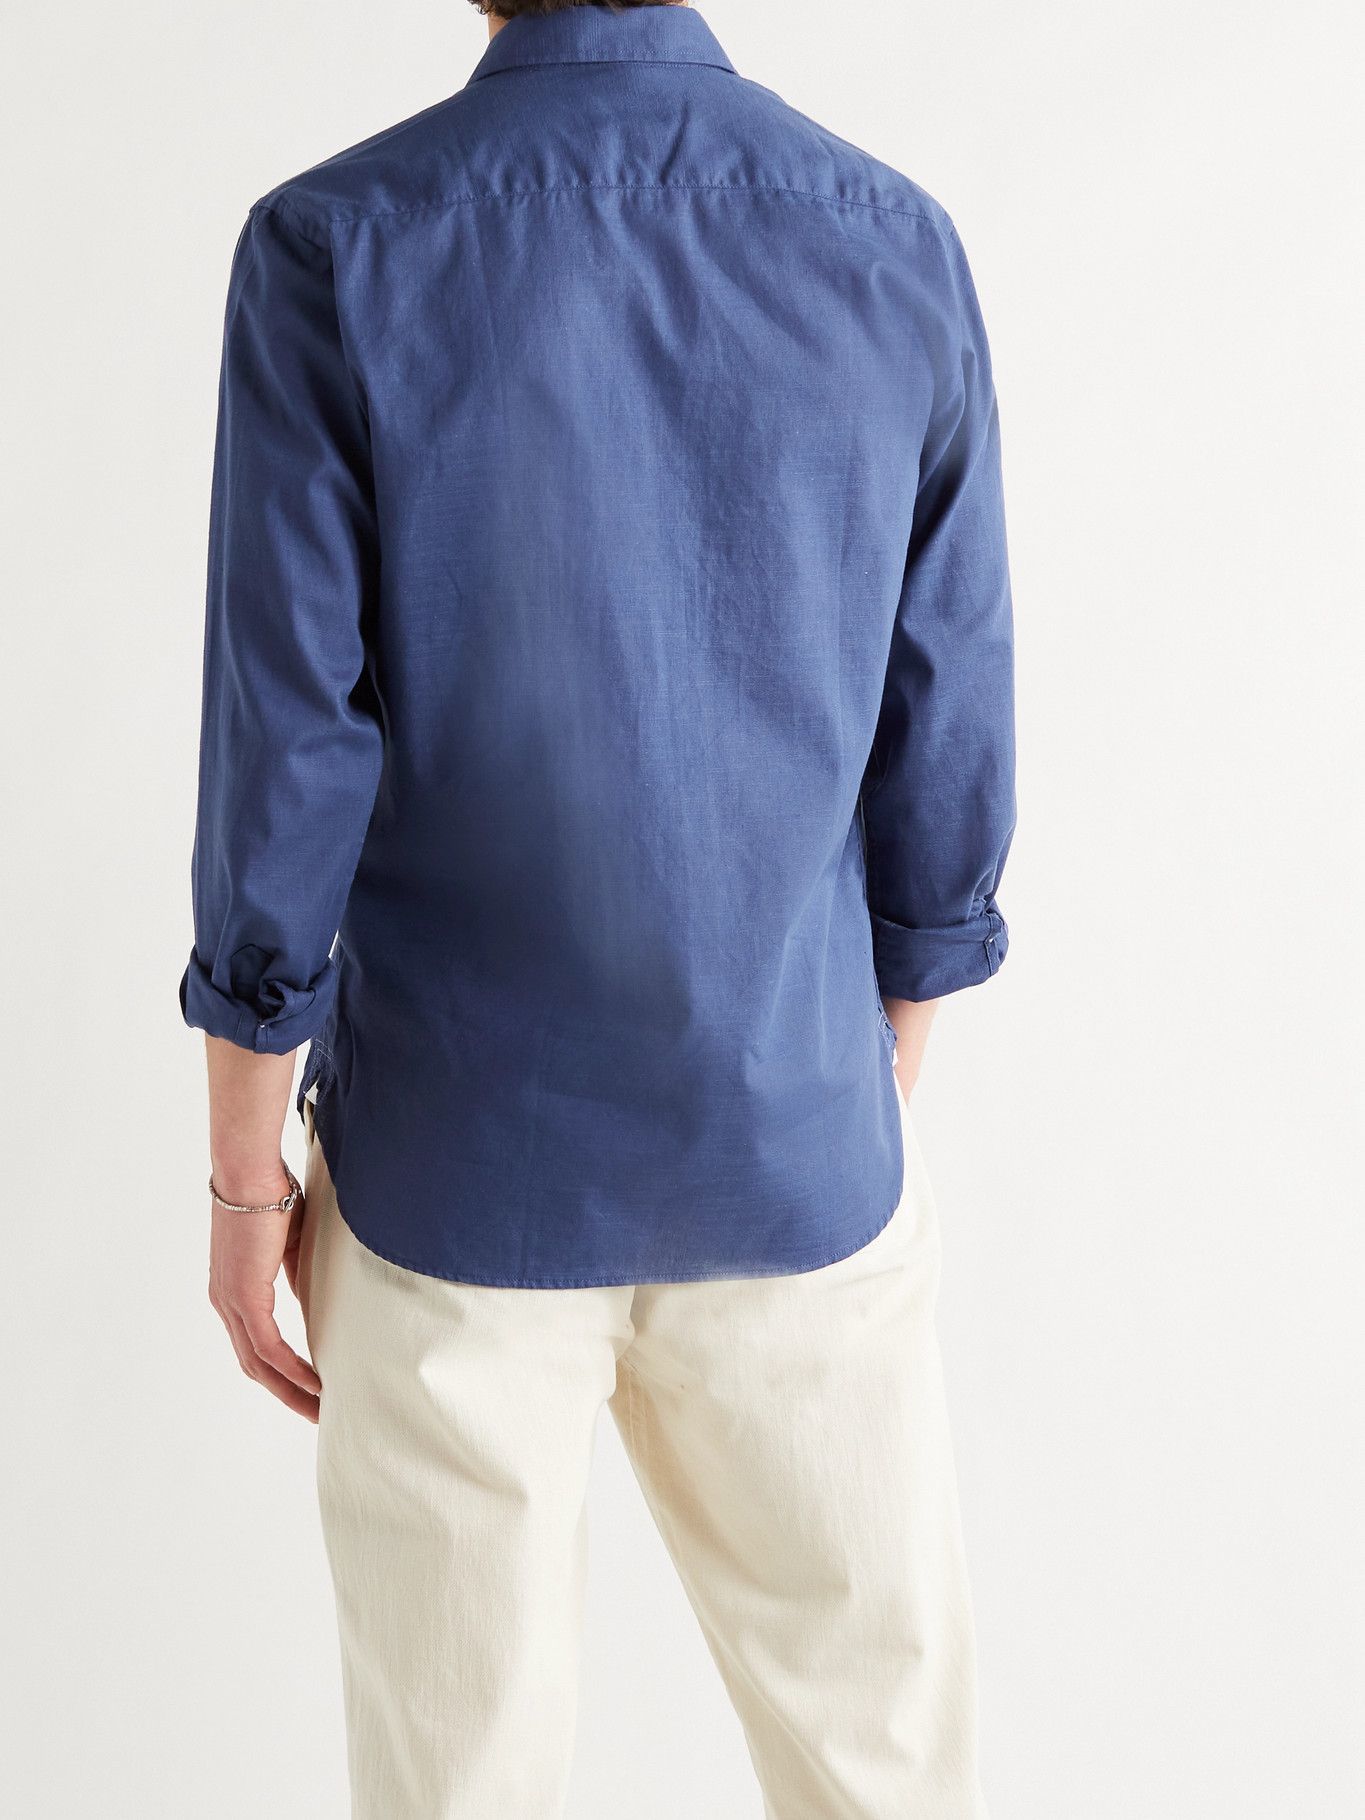 OLIVER SPENCER - Corrigan Cotton Shirt - Blue